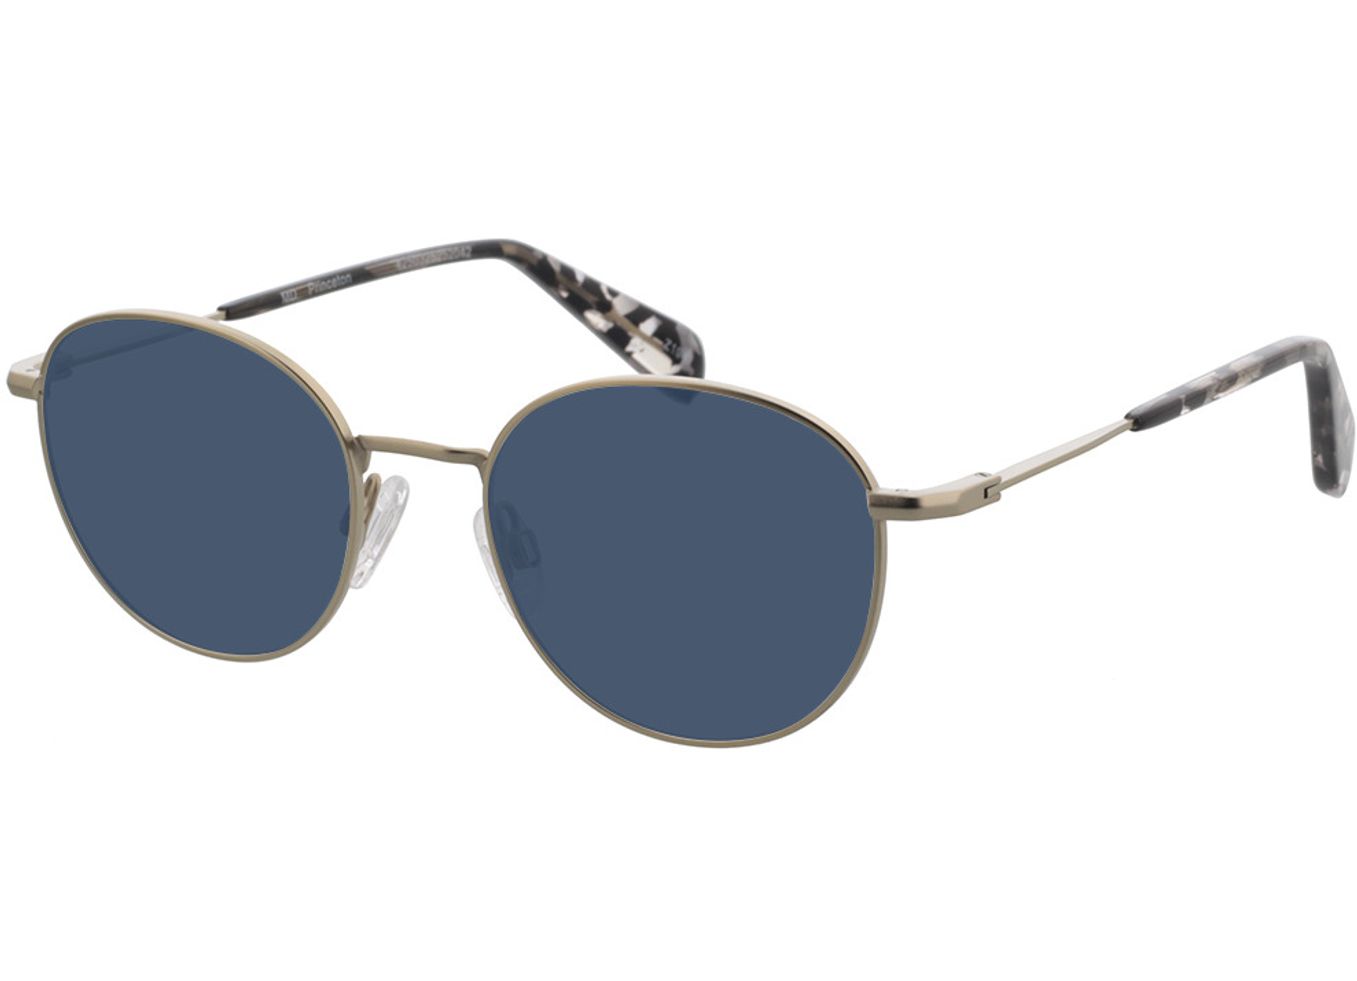 Princeton - silber Sonnenbrille mit Sehstärke, Vollrand, Rund von Brille24 Collection